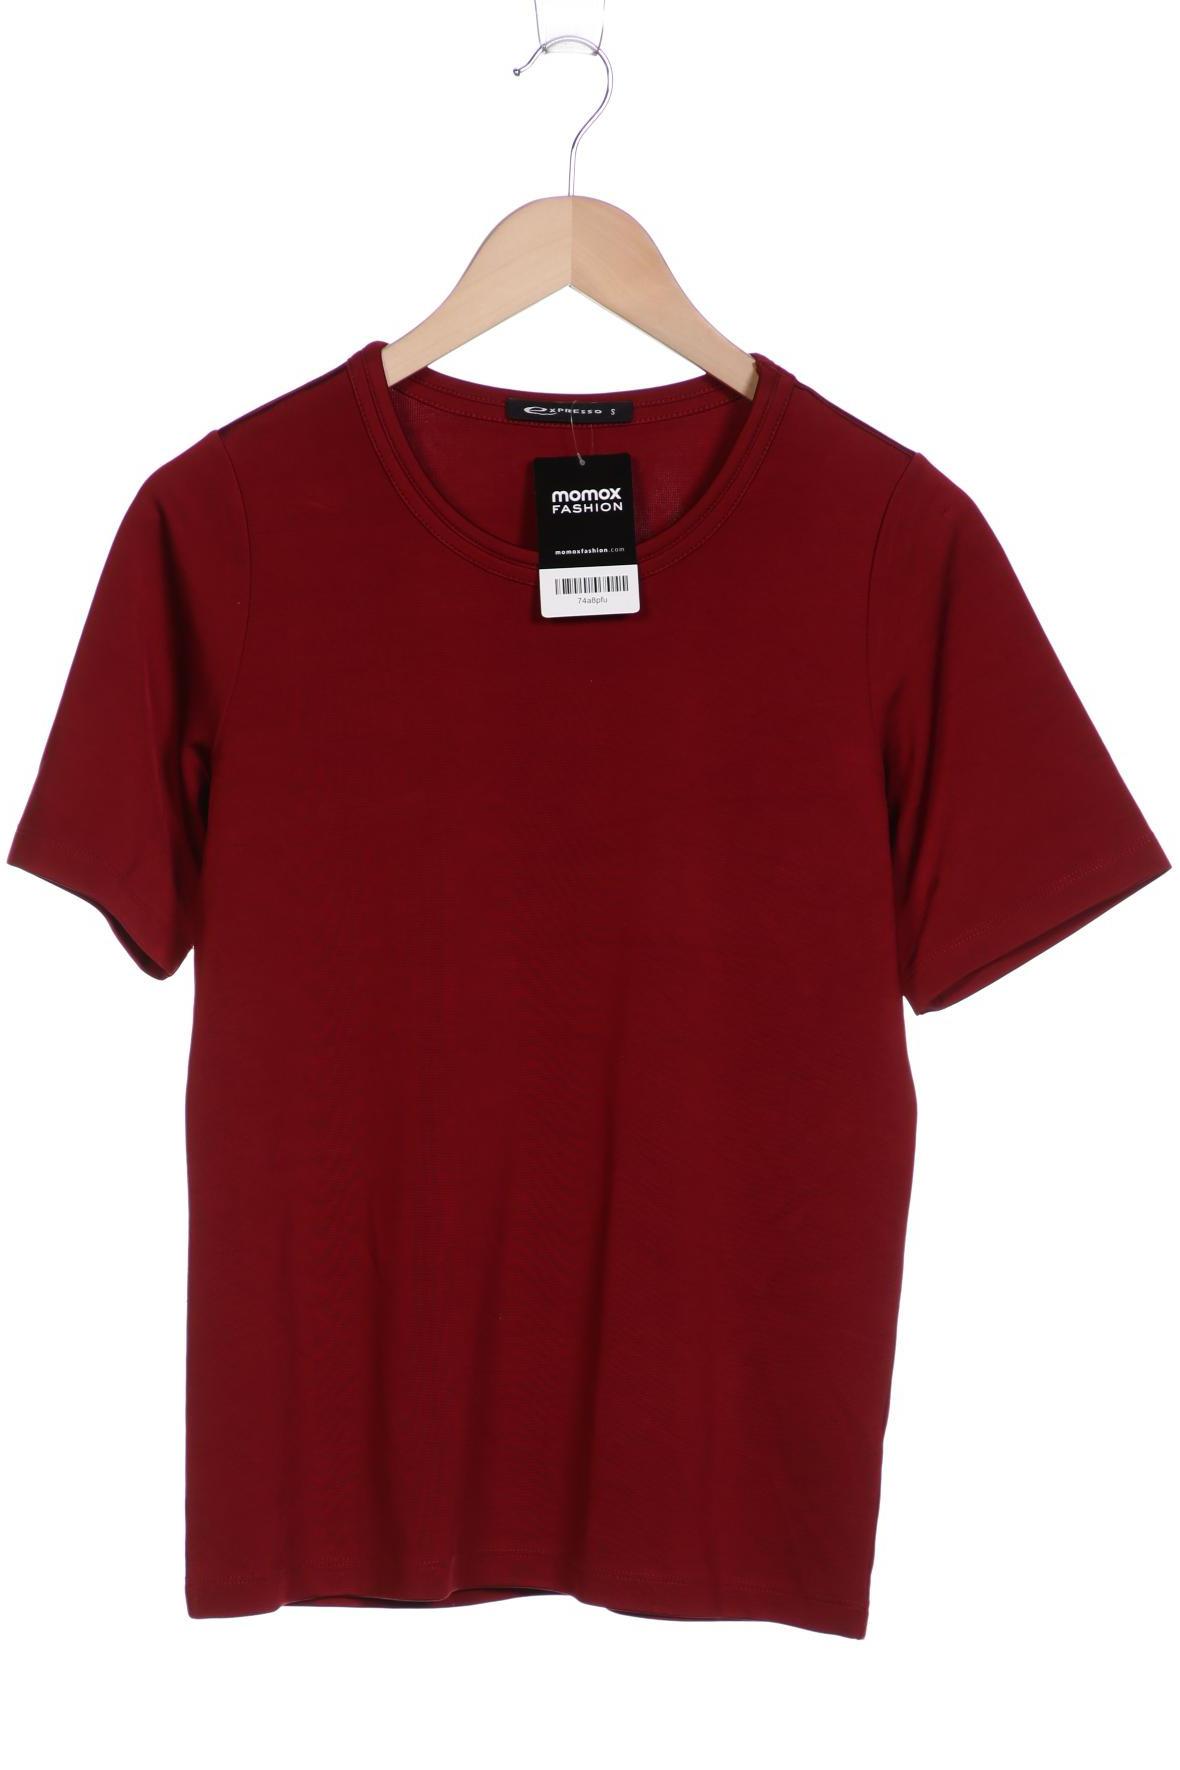 EXPRESSO Damen T-Shirt, rot von EXPRESSO